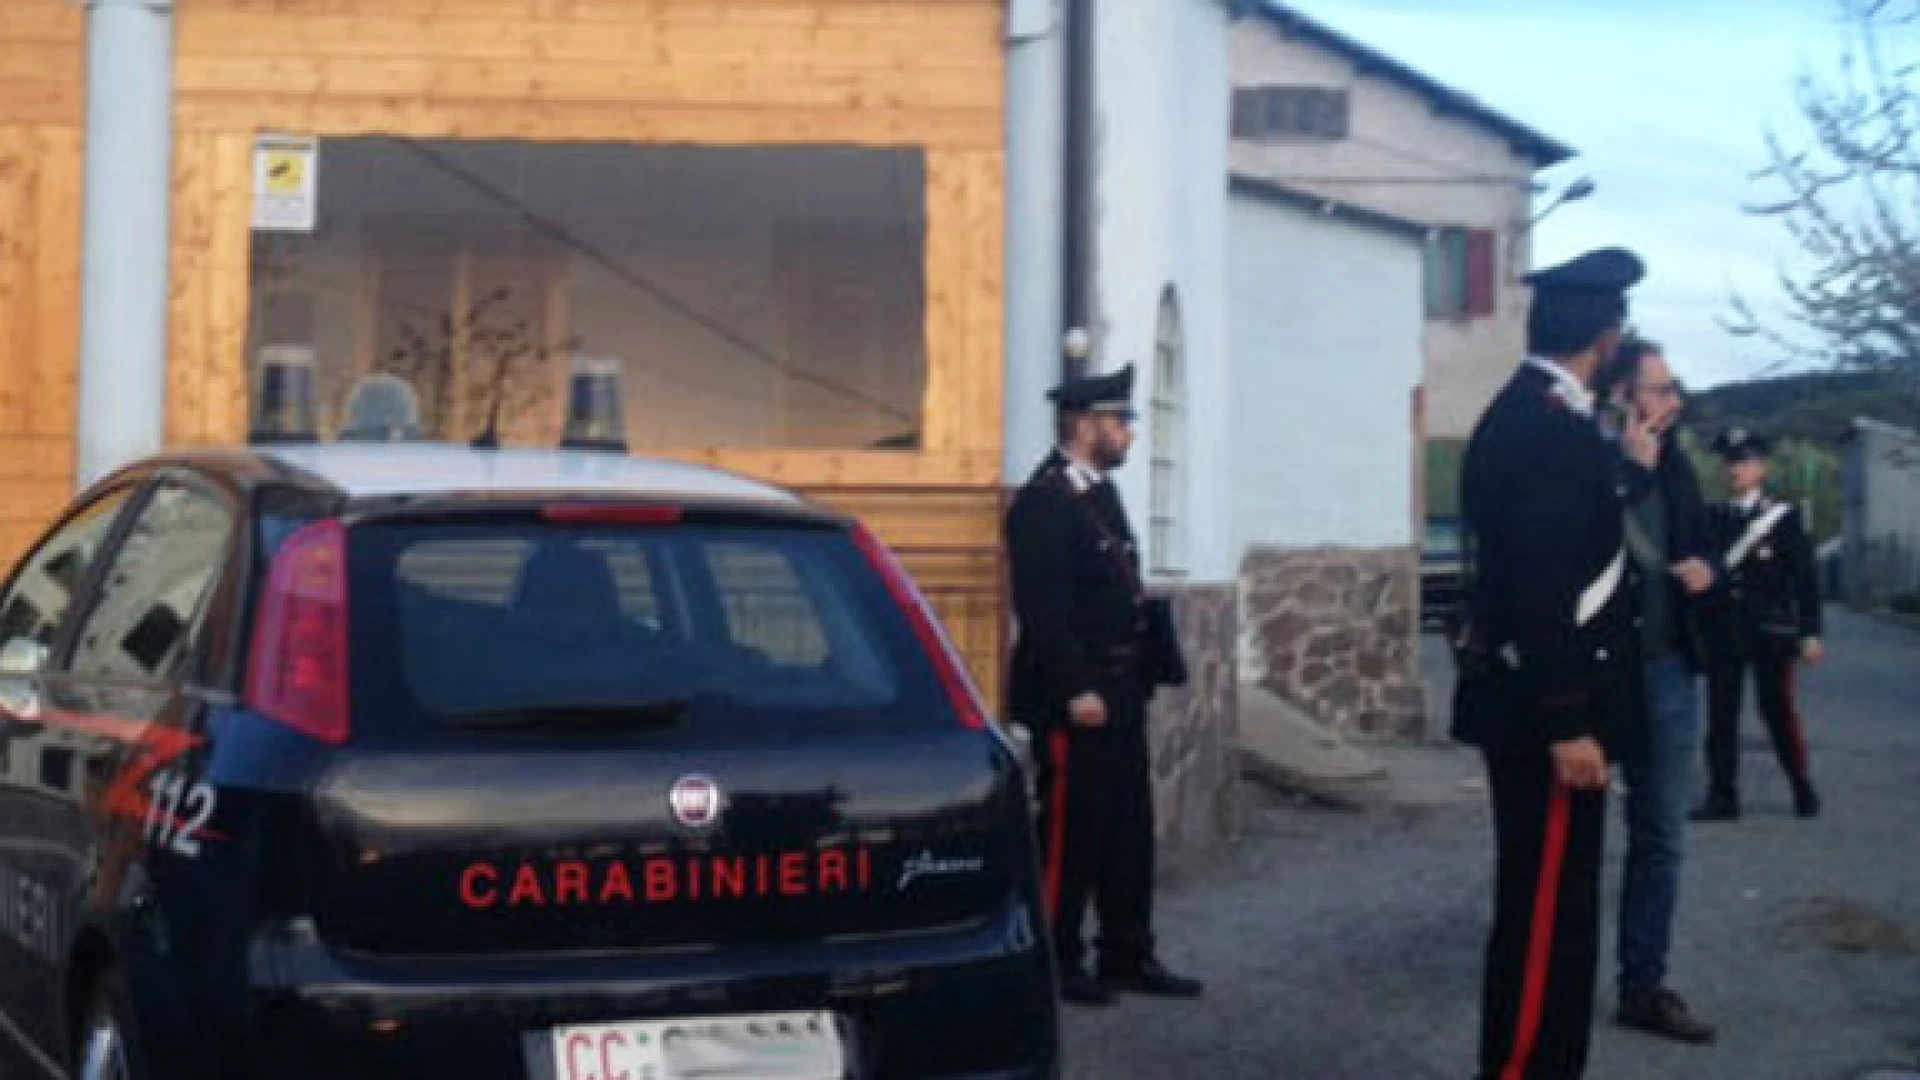 Isernia: Occupava lavoratori a nero all’interno di un centro di accoglienza temporaneo per immigrati, imprenditore denunciato dai Carabinieri.